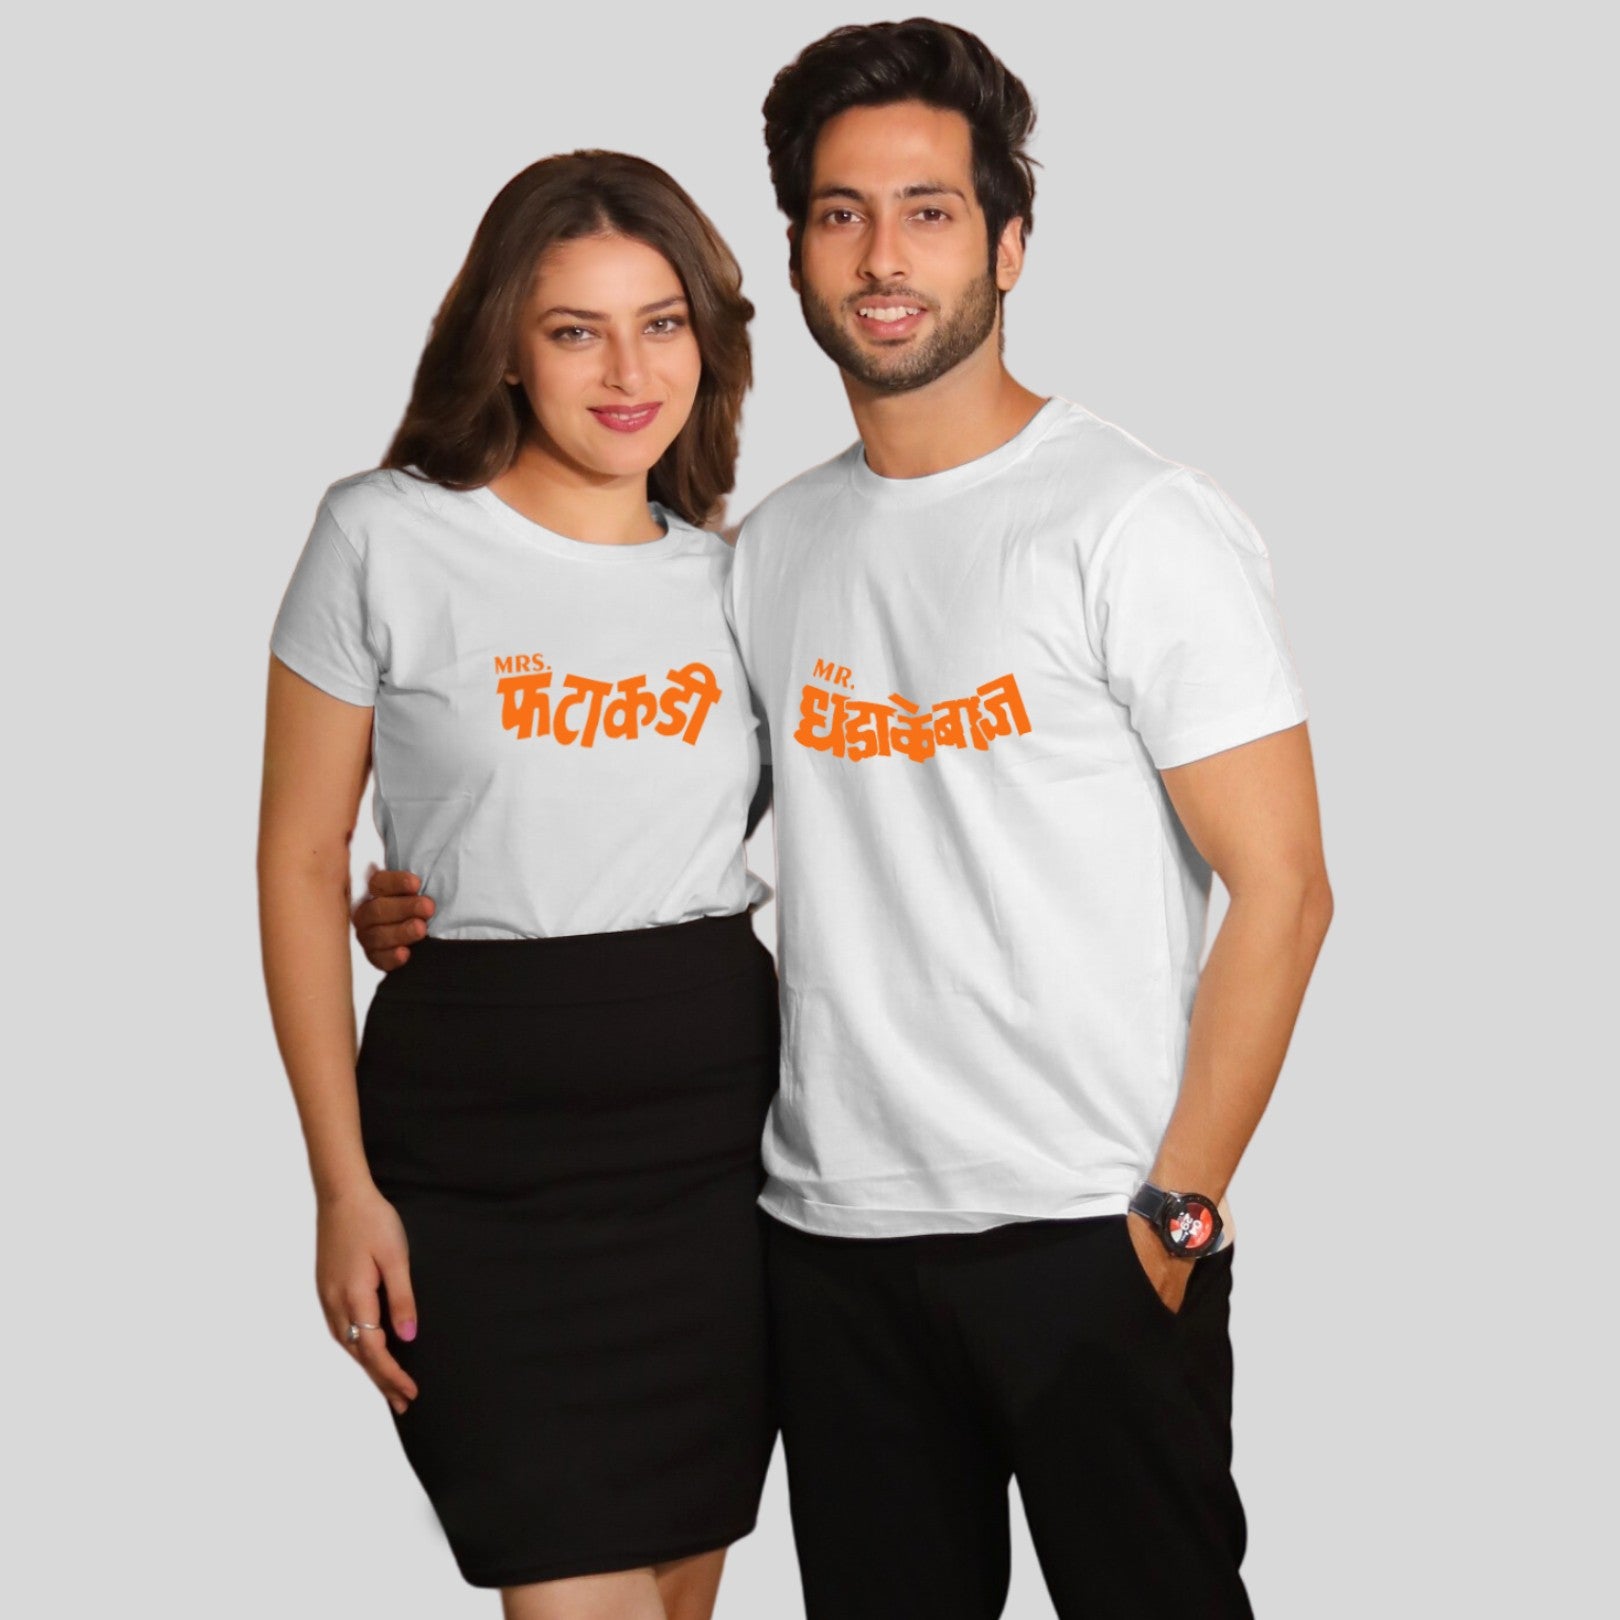 Couple T Shirt In White Colour - Mr Dhadakebaaz Mrs Fatakadi